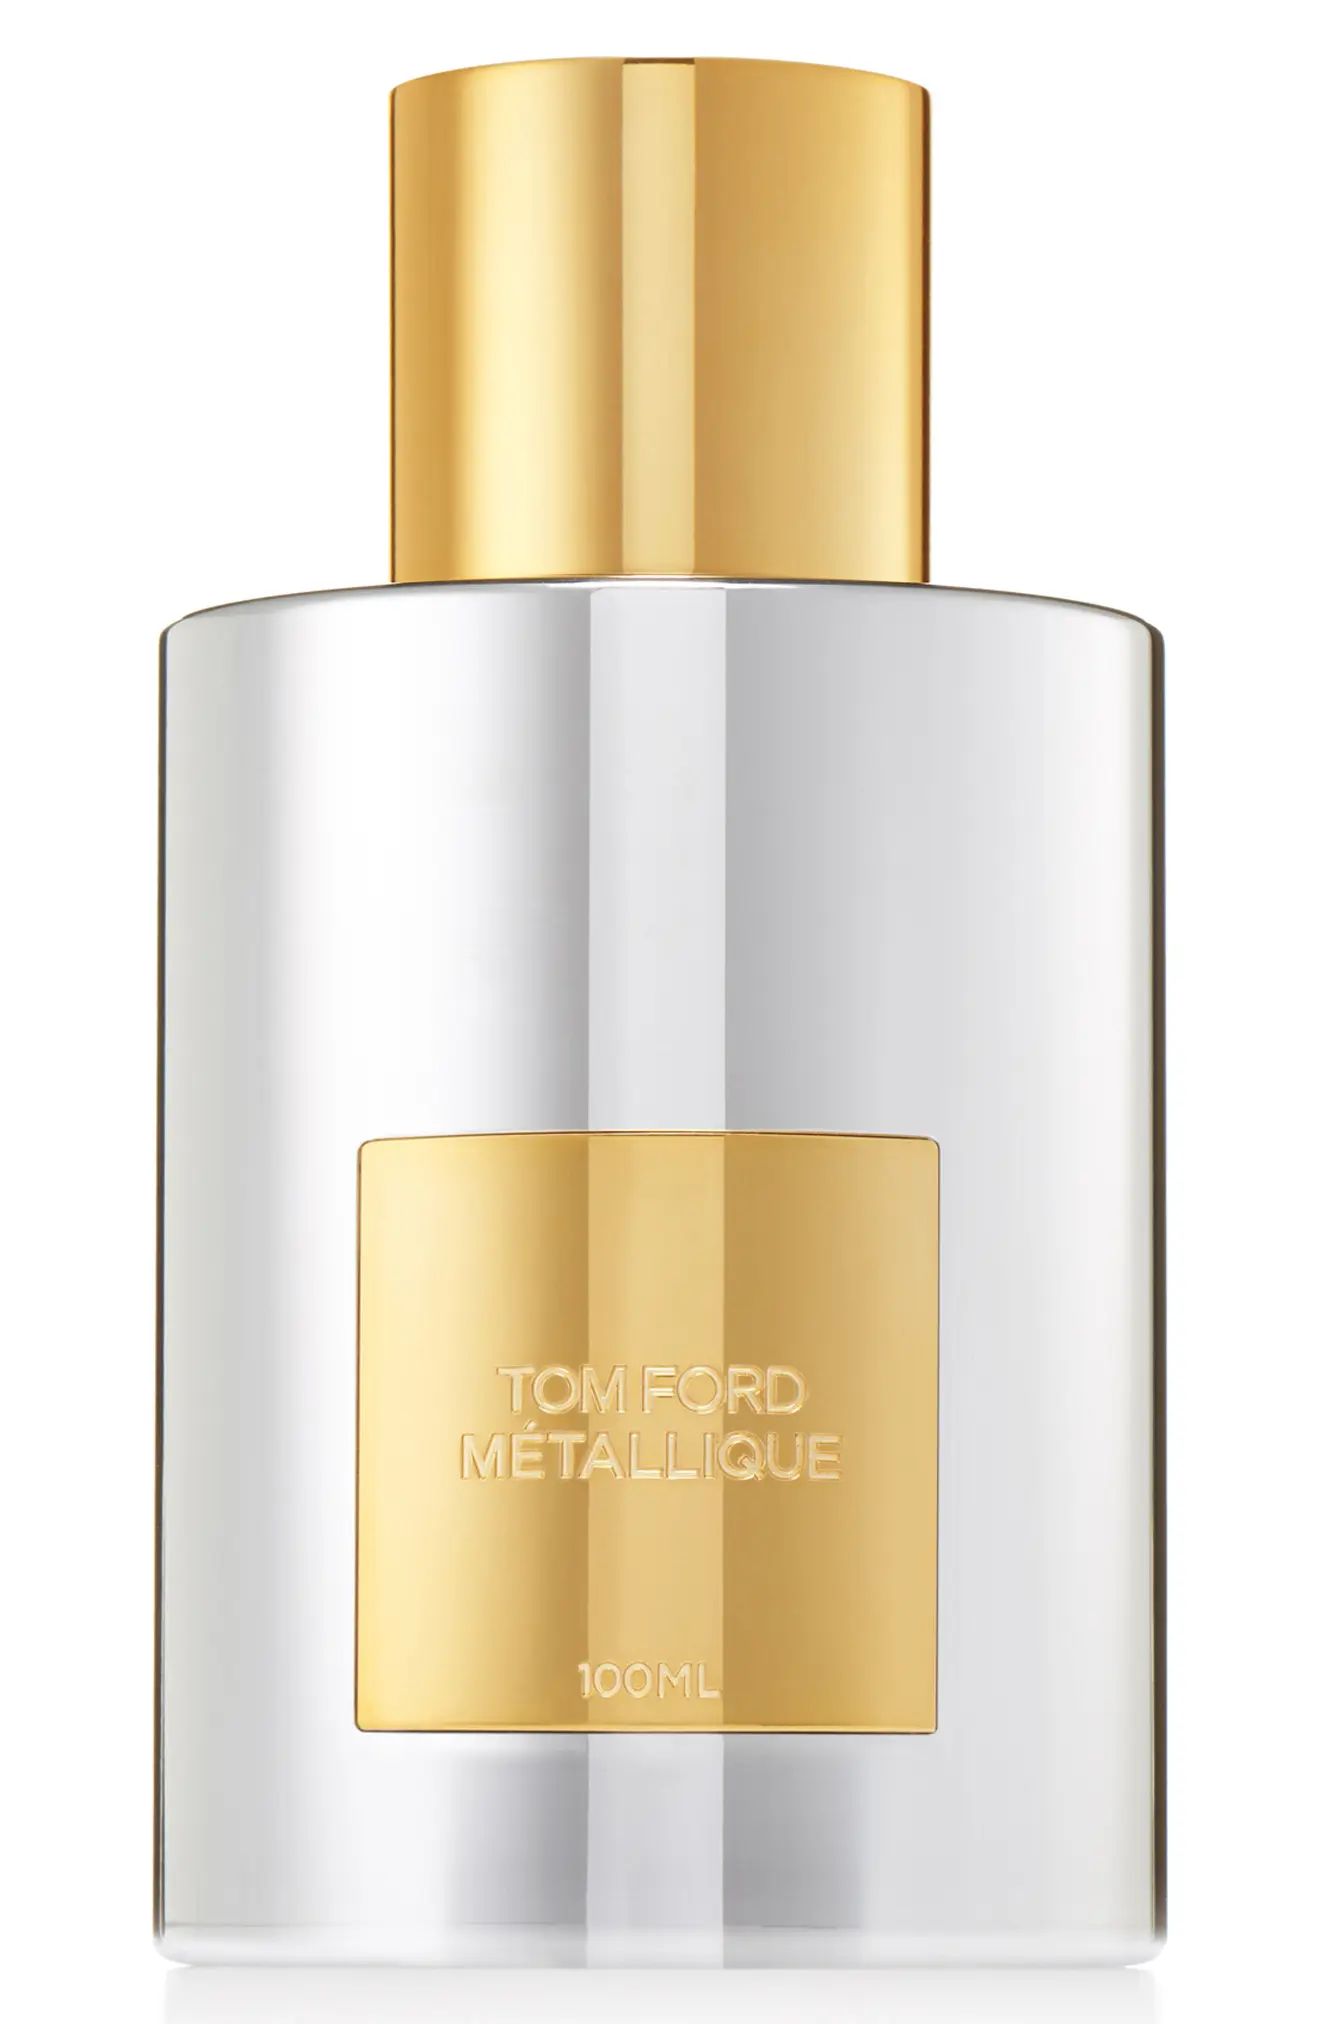 Tom Ford Metallique Fragrance, Size - 3.4 oz | Nordstrom